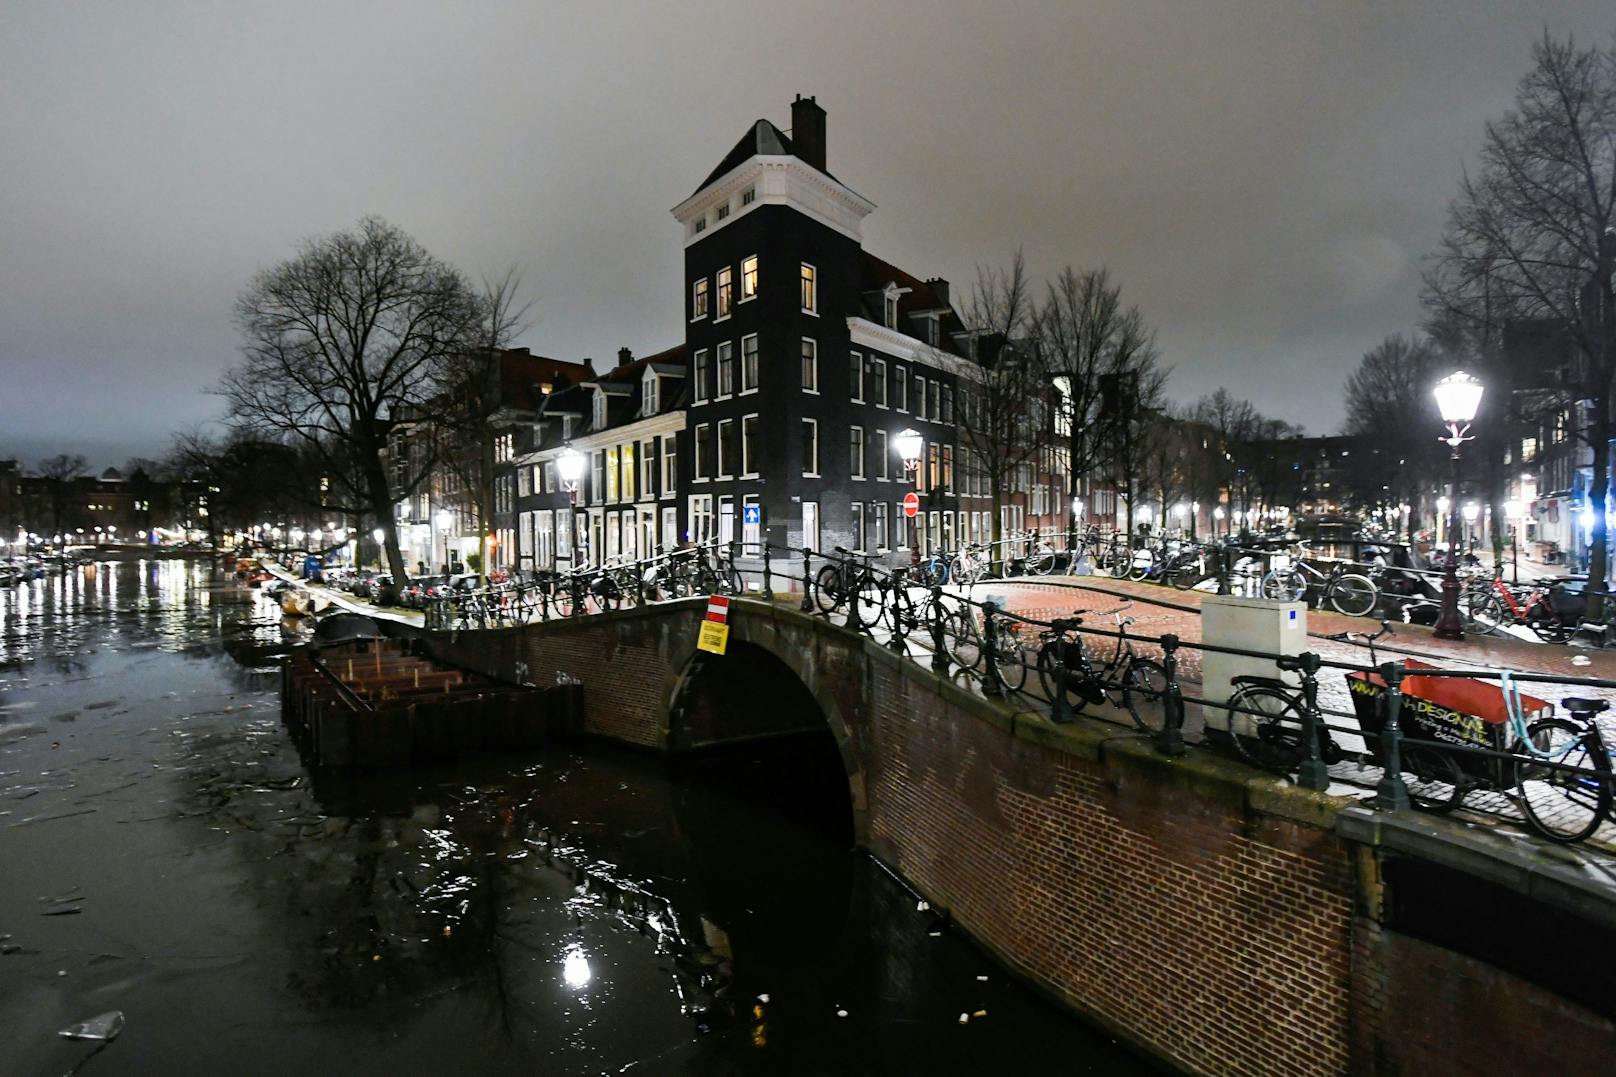 Amsterdam hat kulturelle Highlights, Kunst, einzigartige Architektur und Geschichte zu bieten. Doch der Respekt für die schöne Stadt muss wiederhergestellt werden. Wer wegen Sex-Tourismus oder ähnlichem nach Amsterdam reist, ist nicht mehr willkommen.